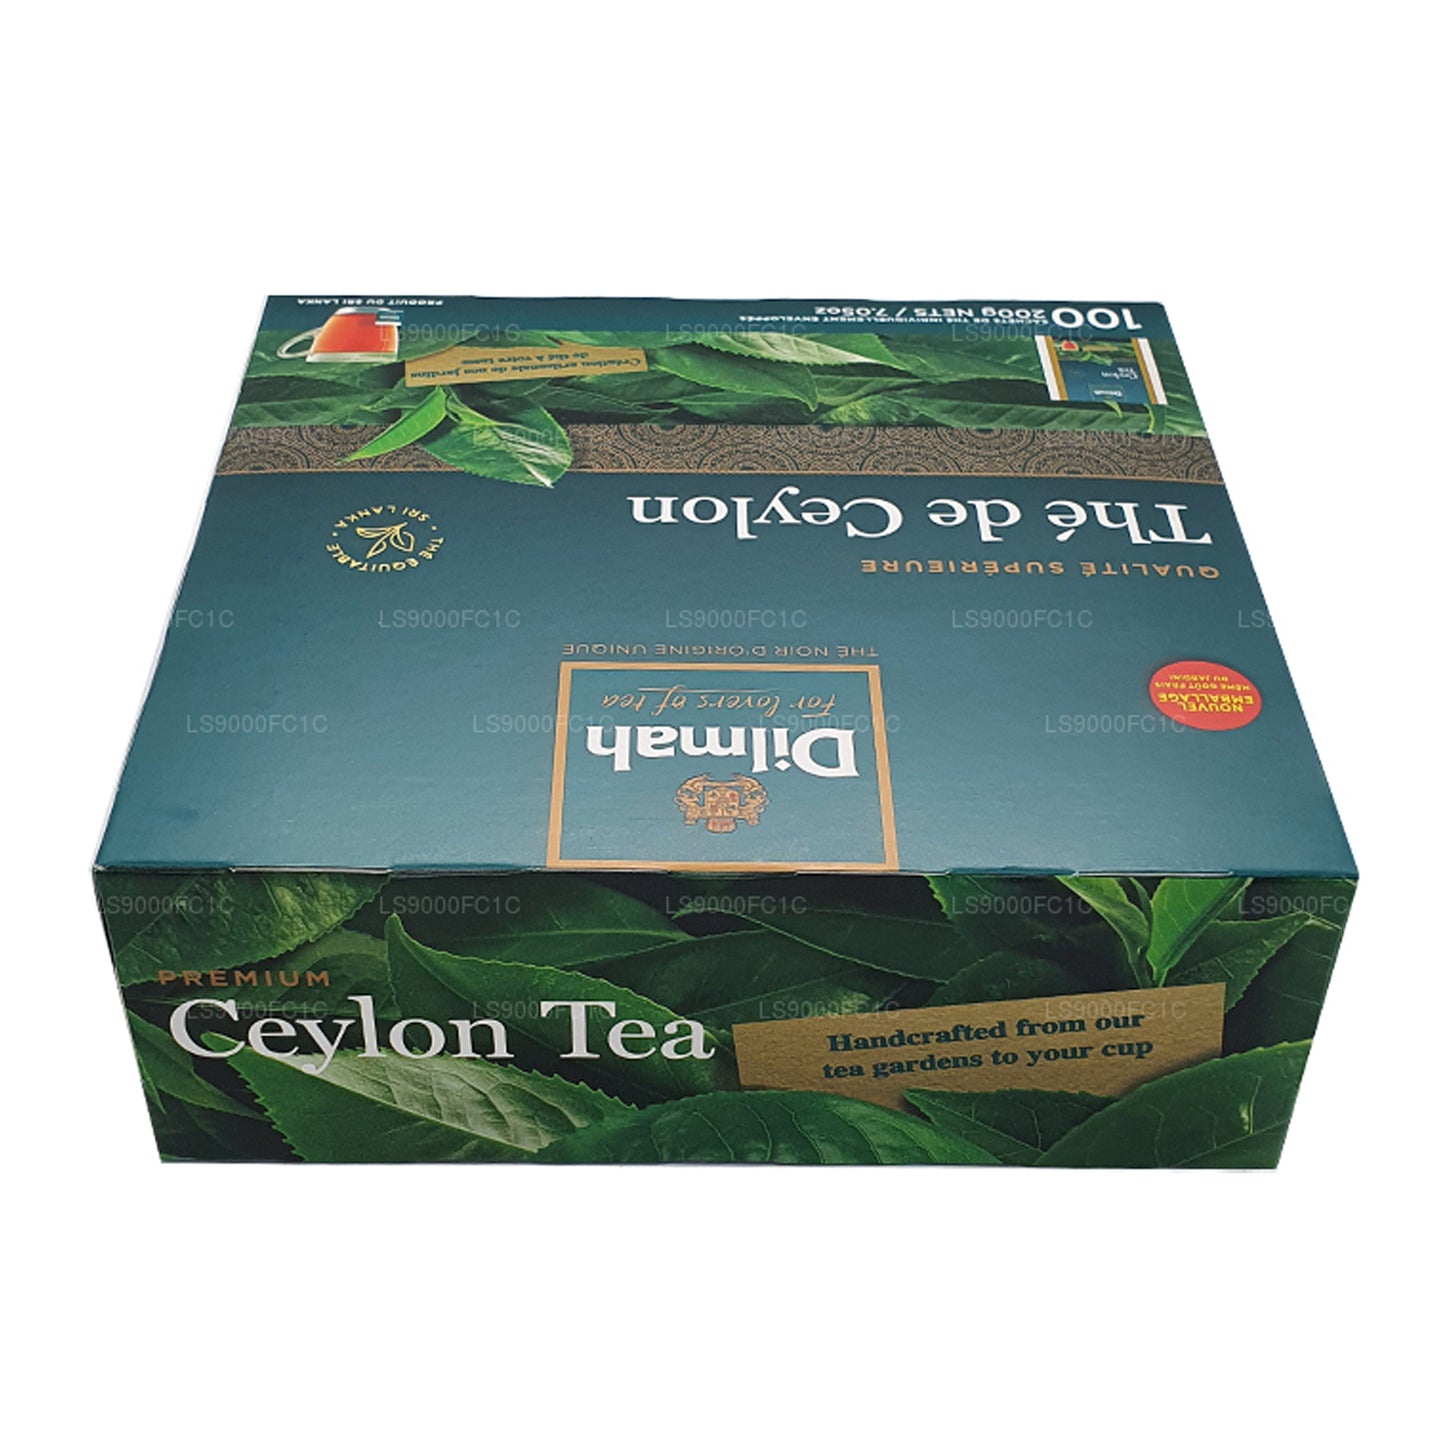 شاي سيلاني فاخر من ديلما، مغلف بشكل فردي، 100 كيس شاي (200 جرام)